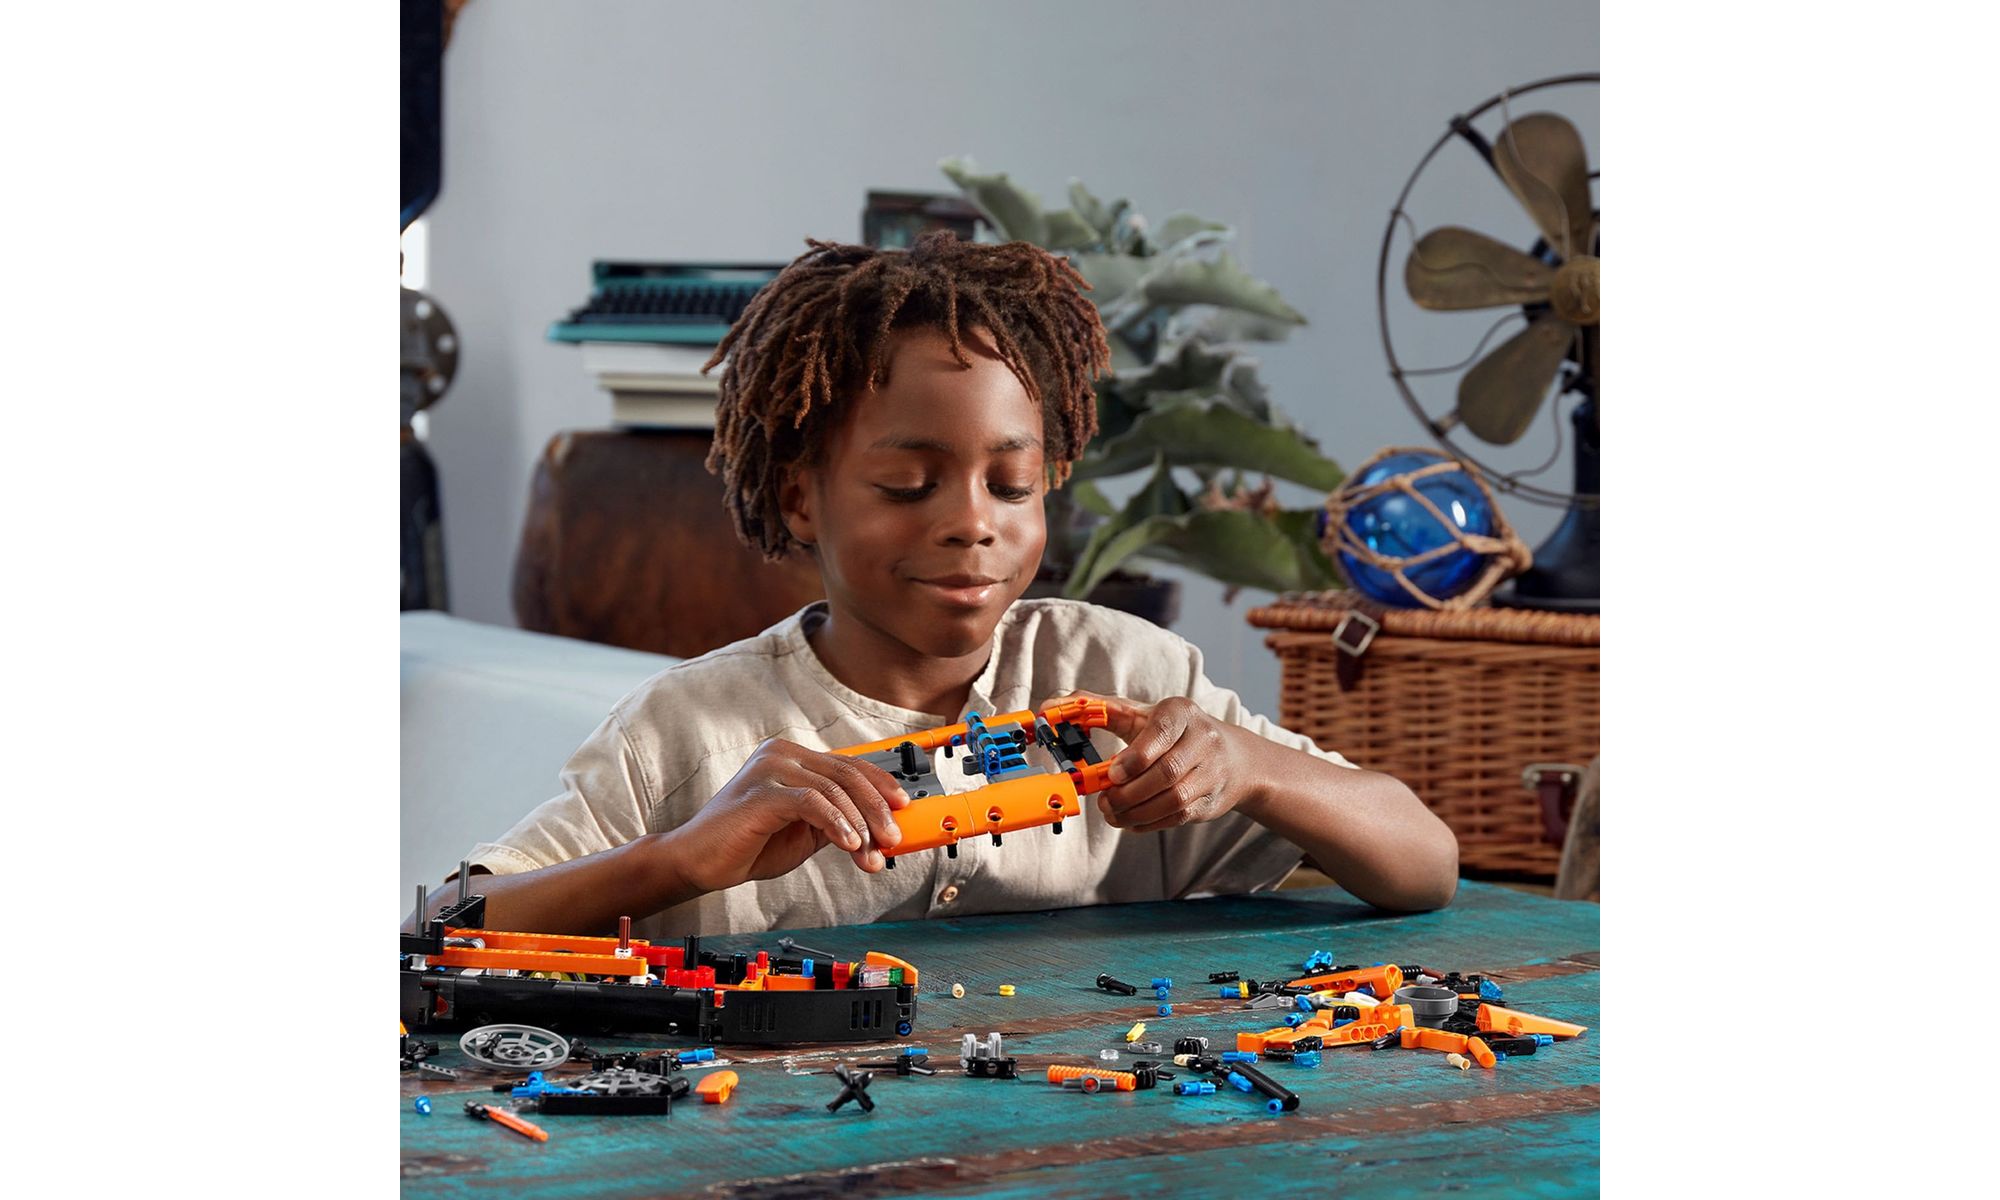 LEGO Technic 2 Em 1 - Hovercraft de Resgate 42120